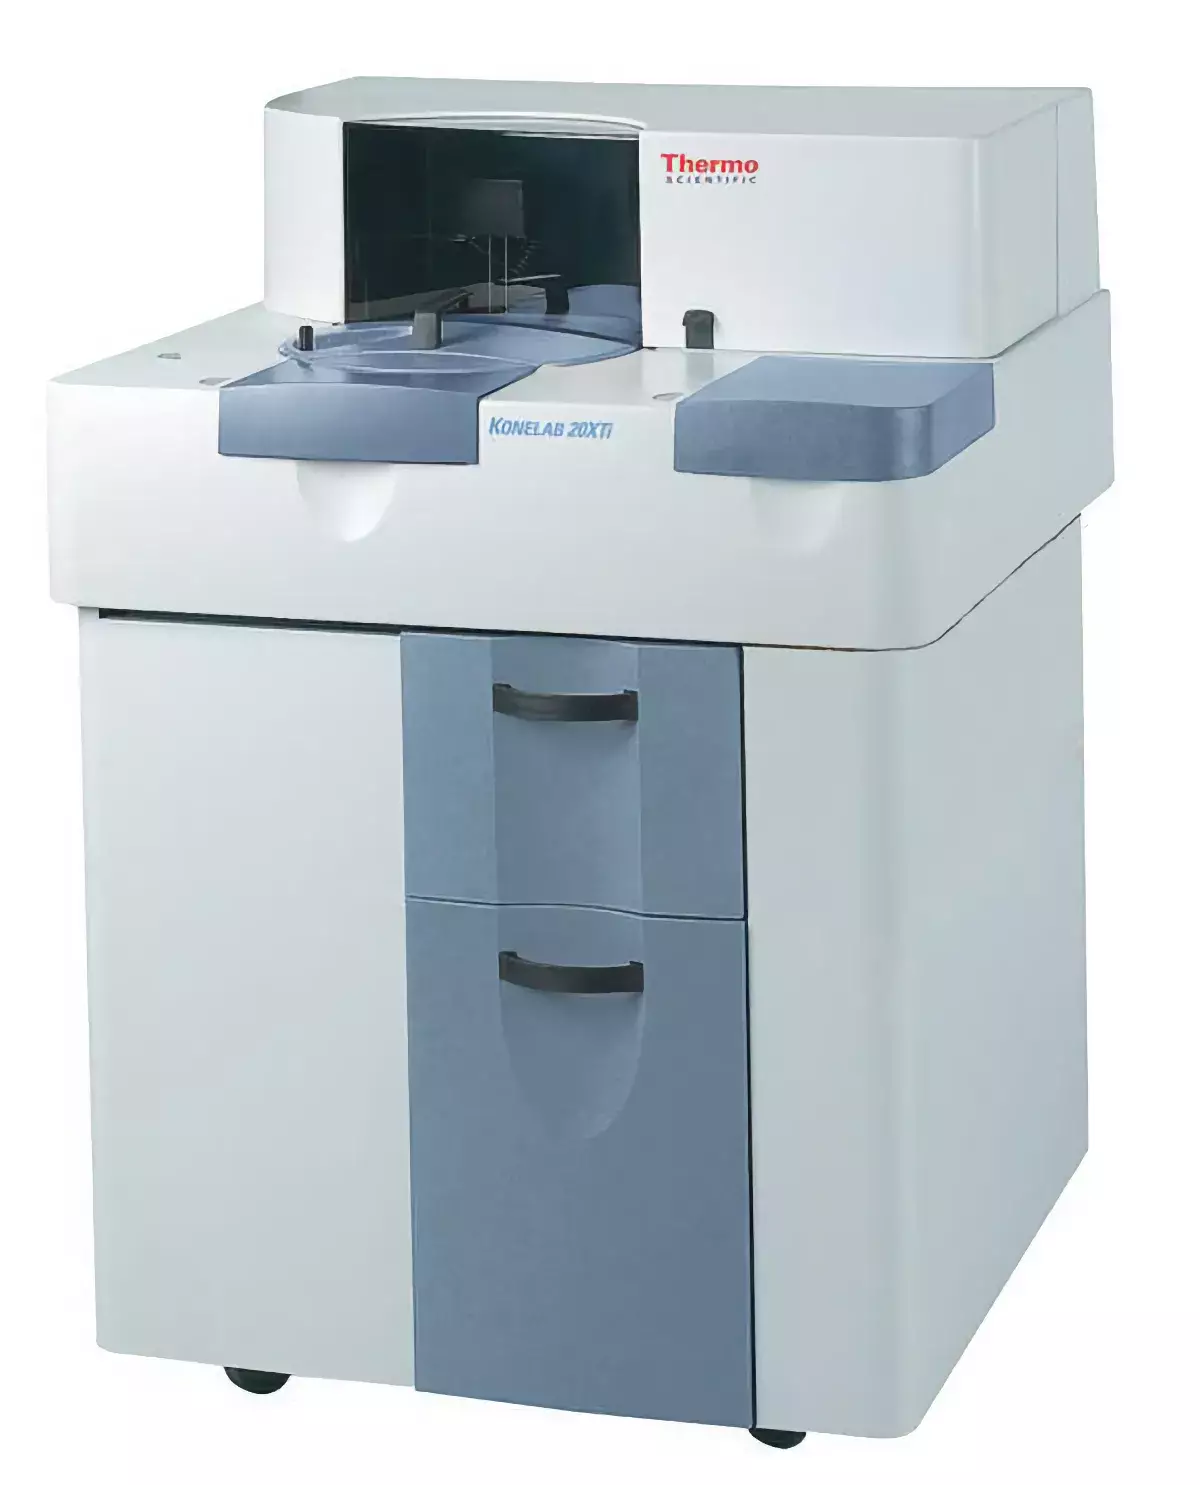 Биохимический анализатор Konelab 20 XTi, 250 тест./ч, автоматический, с ионселективным блоком